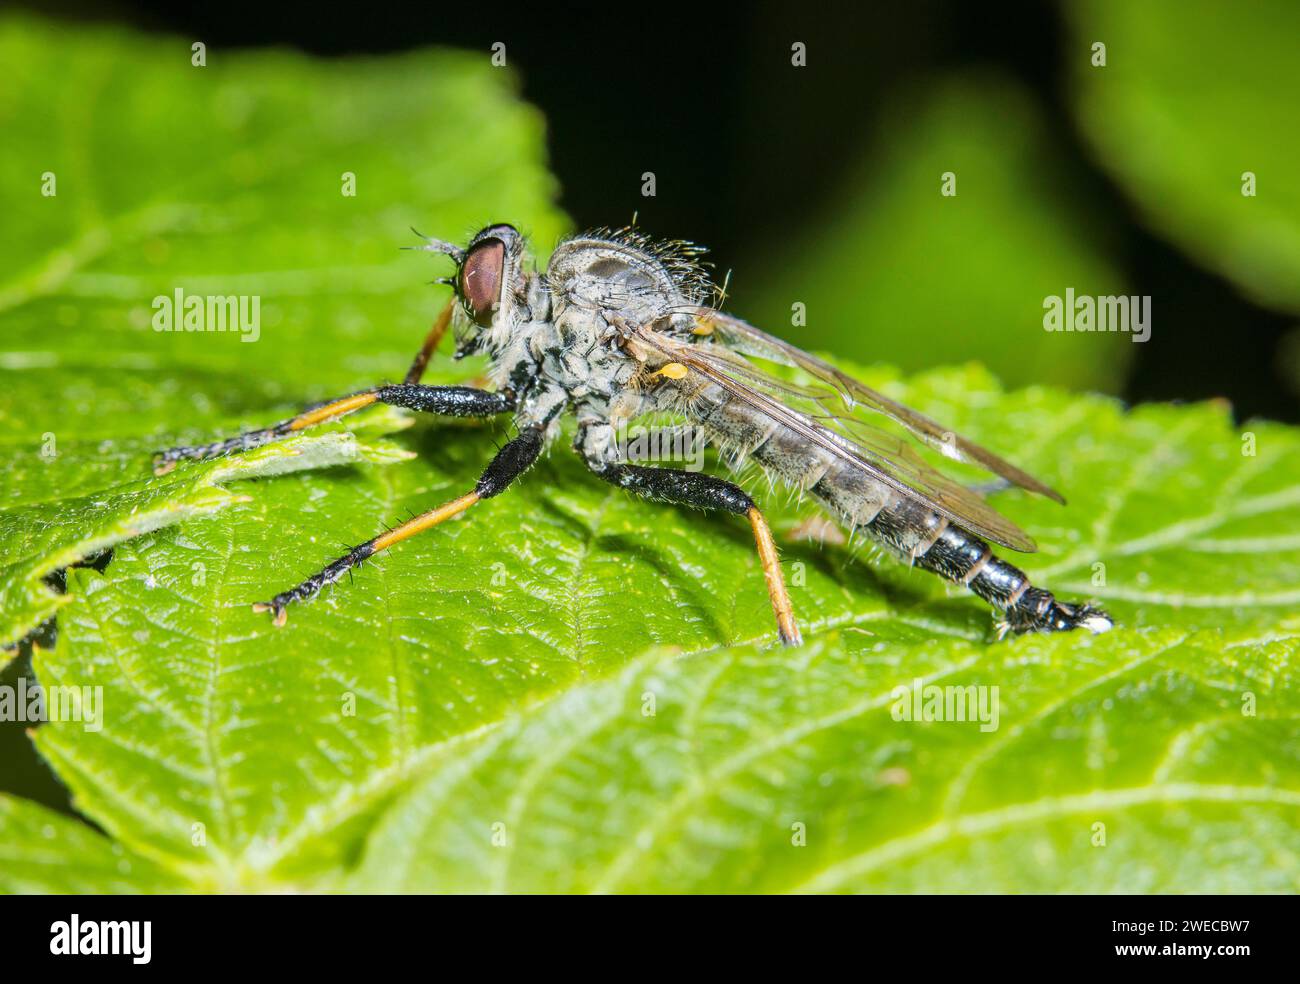 Gewöhnliche Asche Robberfly, Affe Robberfly (Neoitamus cyanurus, Itamus cyanurus), auf einem Blatt sitzend, Deutschland Stockfoto